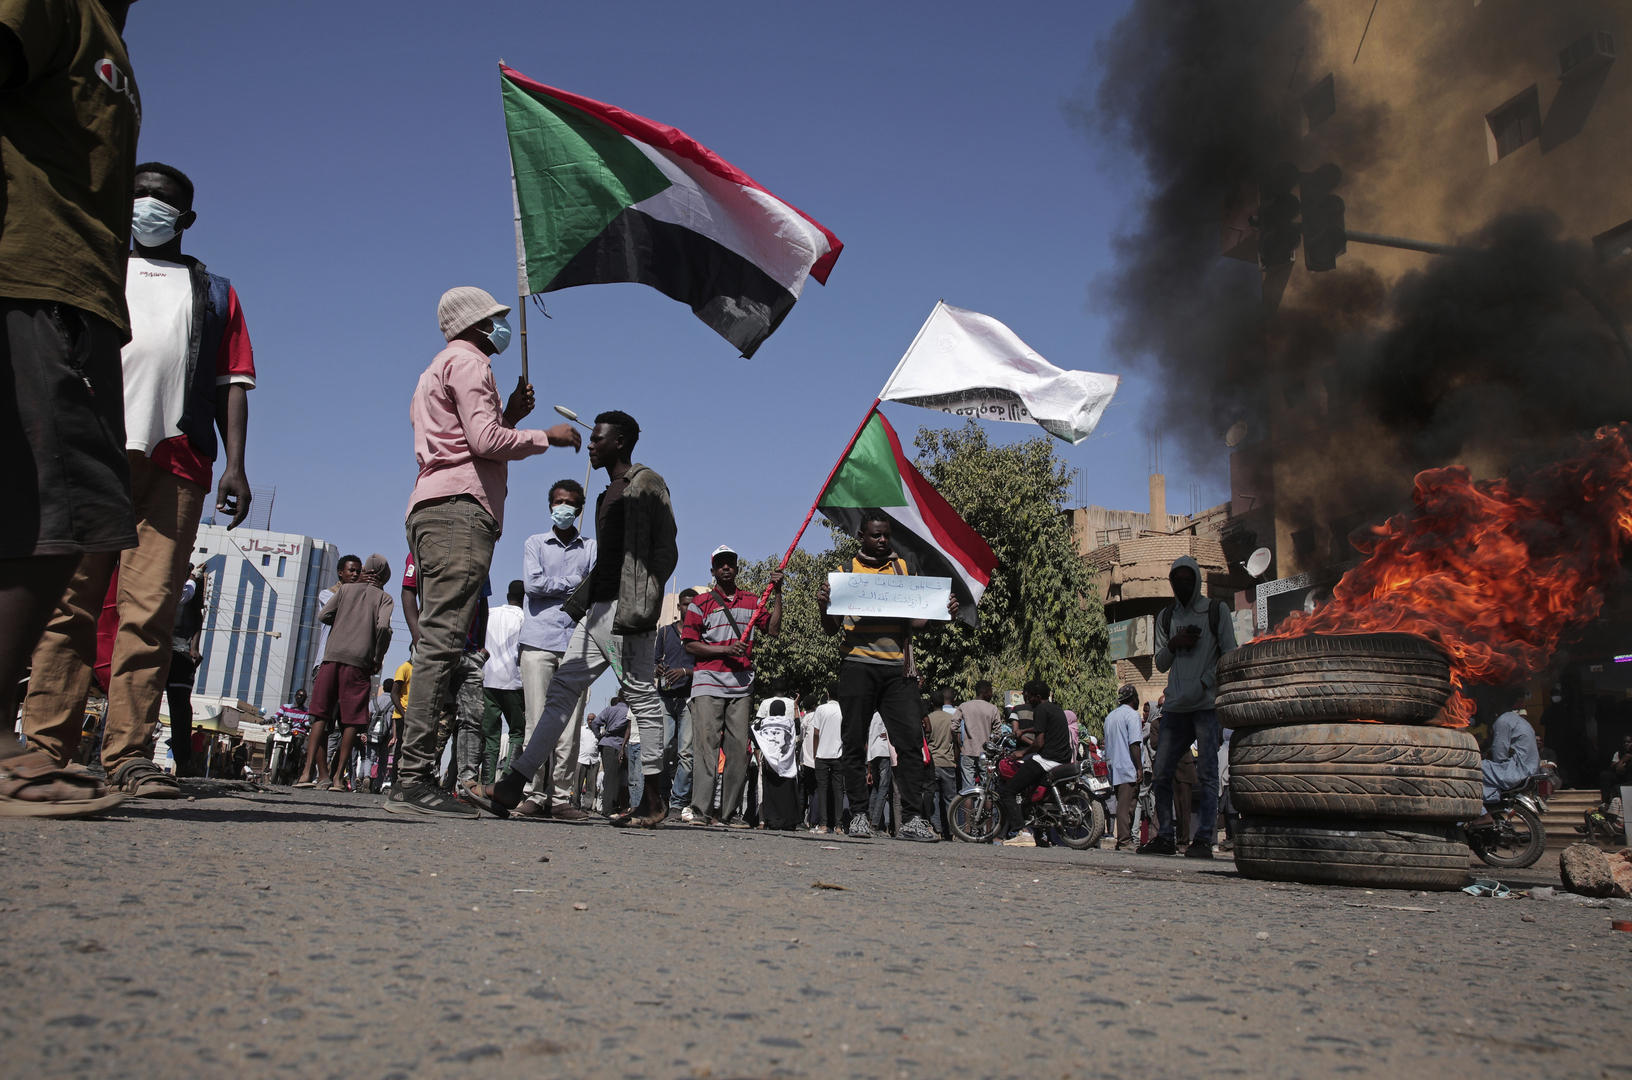 قوى الحرية والتغيير: لسنا جزءا من أي نقاشات حول ميثاق أو إعلان سياسي جديد في السودان